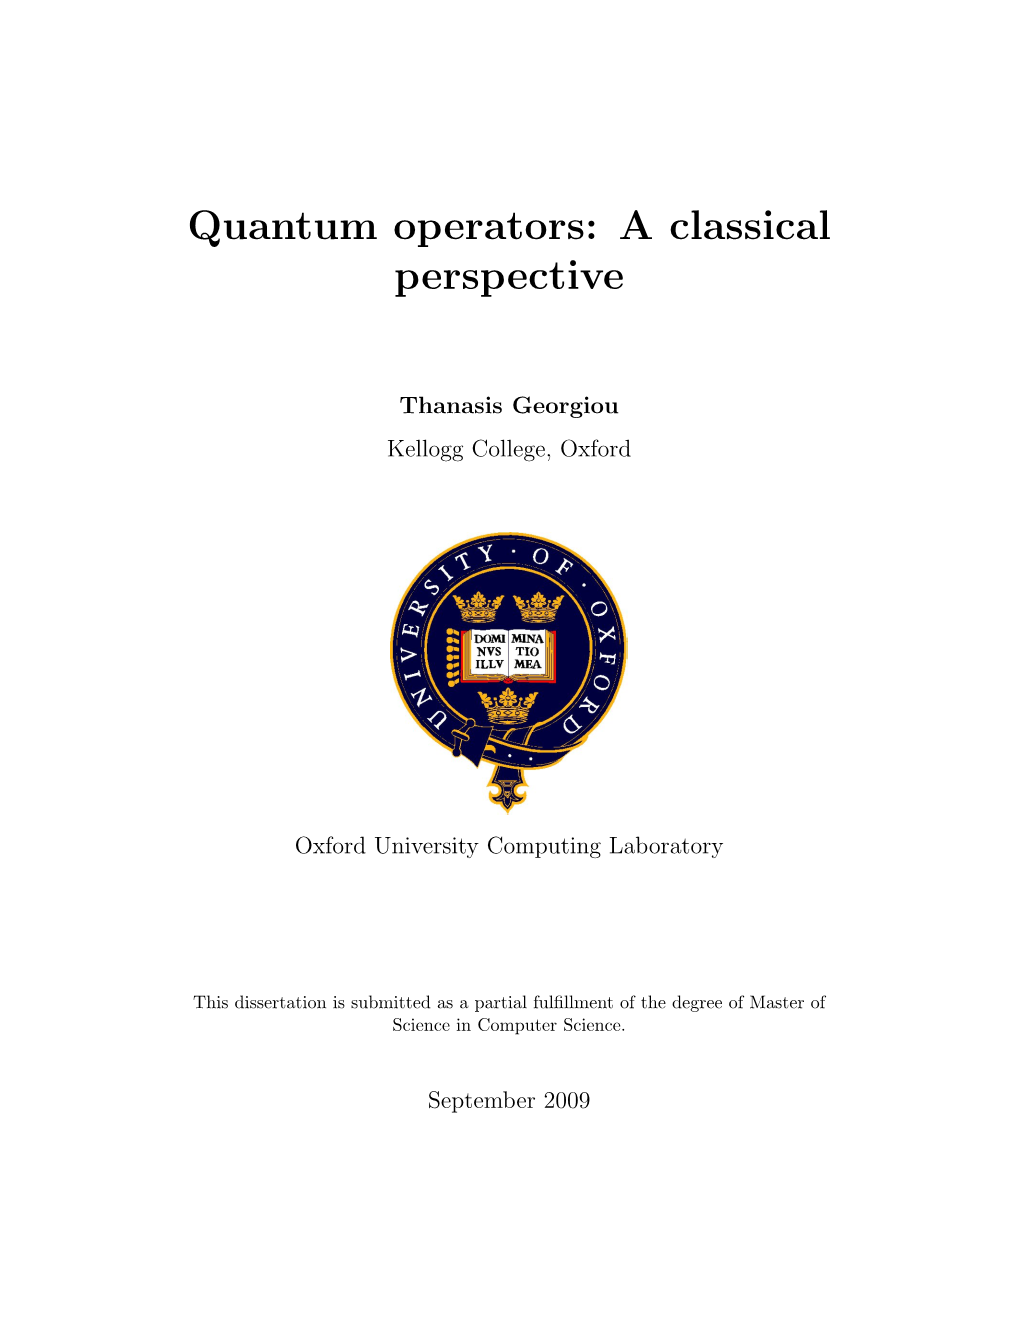 Quantum Operators: a Classical Perspective